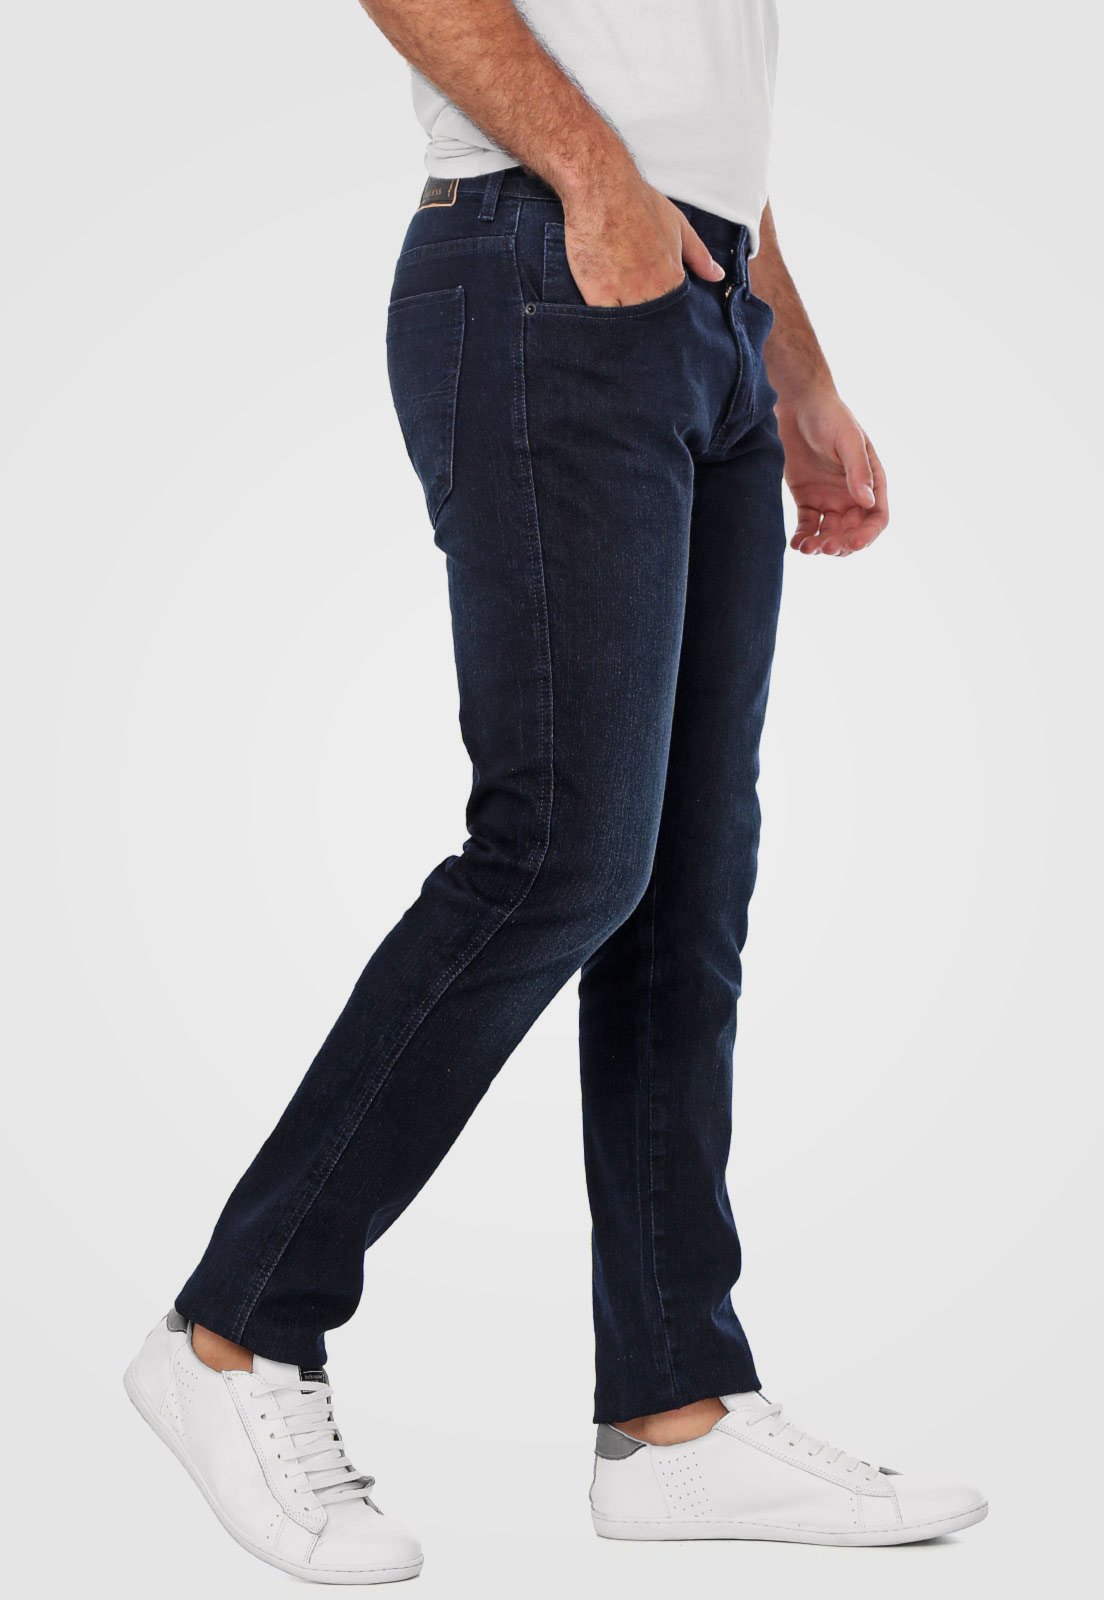 Calcas Jeans - Compre agora online Dafiti Brasil